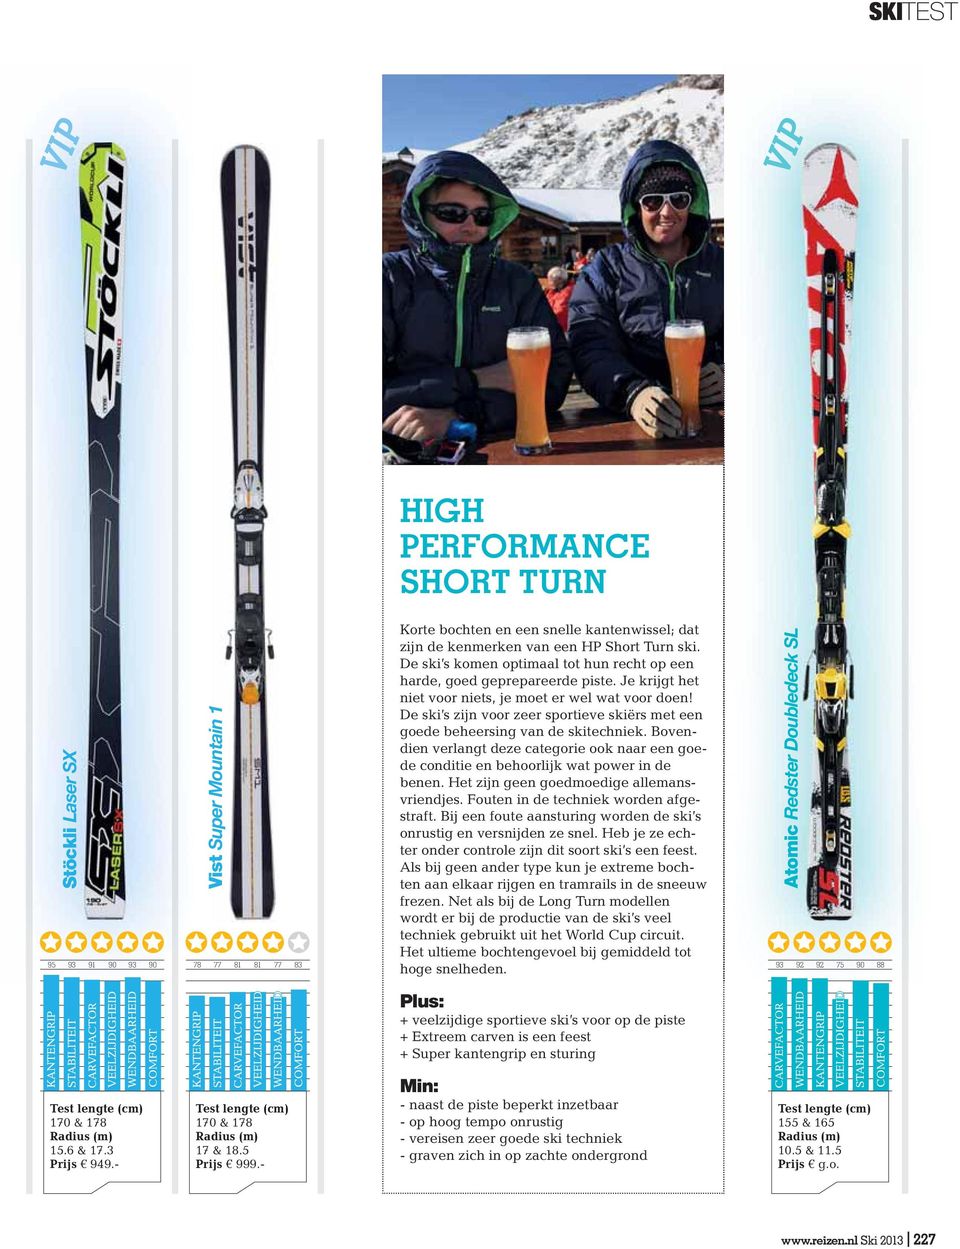 De ski s zijn voor zeer sportieve skiërs met een goede beheersing van de skitechniek. Bovendien verlangt deze categorie ook naar een goede conditie en behoorlijk wat power in de benen.